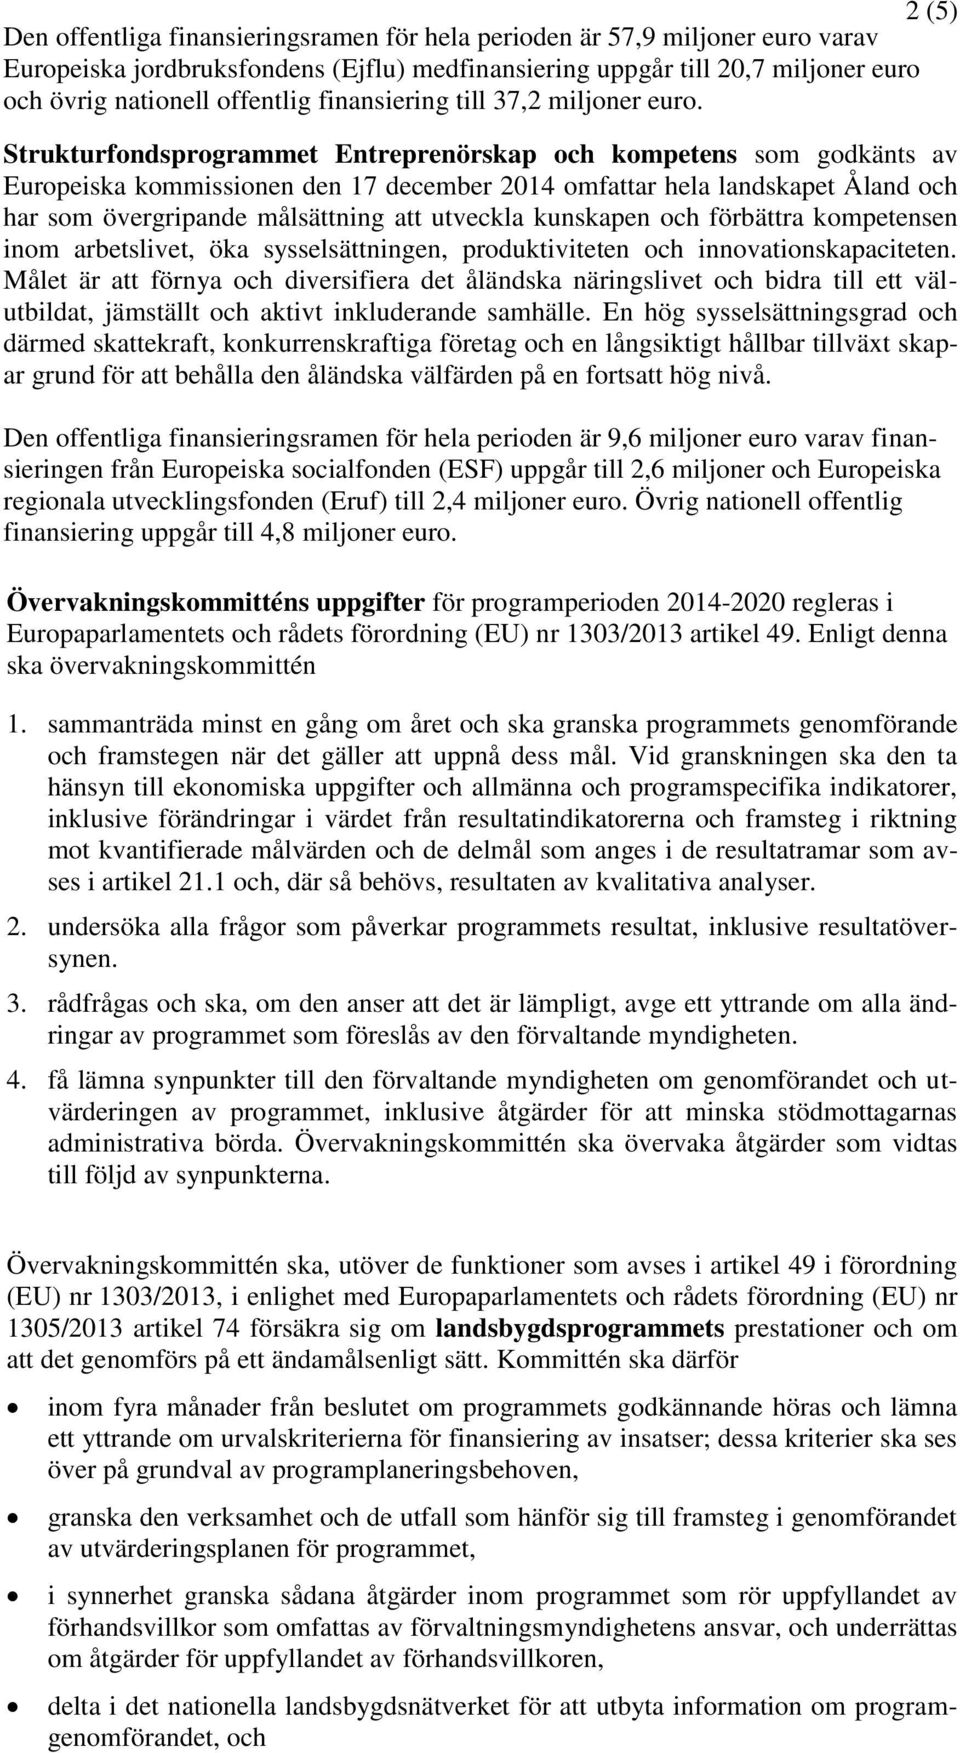 Strukturfondsprogrammet Entreprenörskap och kompetens som godkänts av Europeiska kommissionen den 17 december 2014 omfattar hela landskapet Åland och har som övergripande målsättning att utveckla